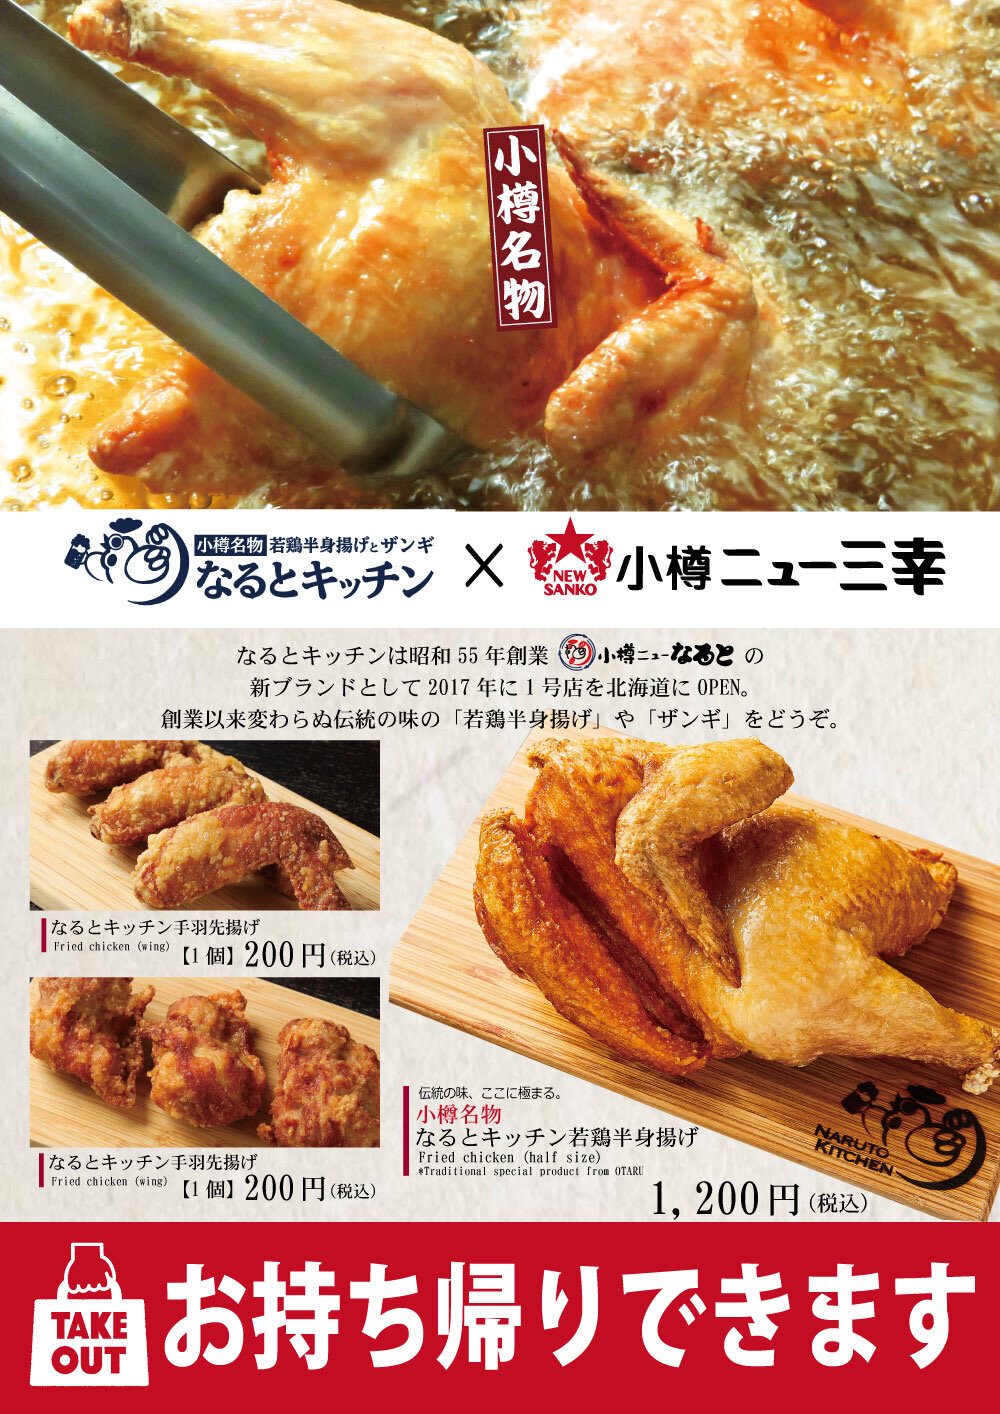 北海道の美味しい料理と北海道限定サッポロクラシックが堪能できます。①